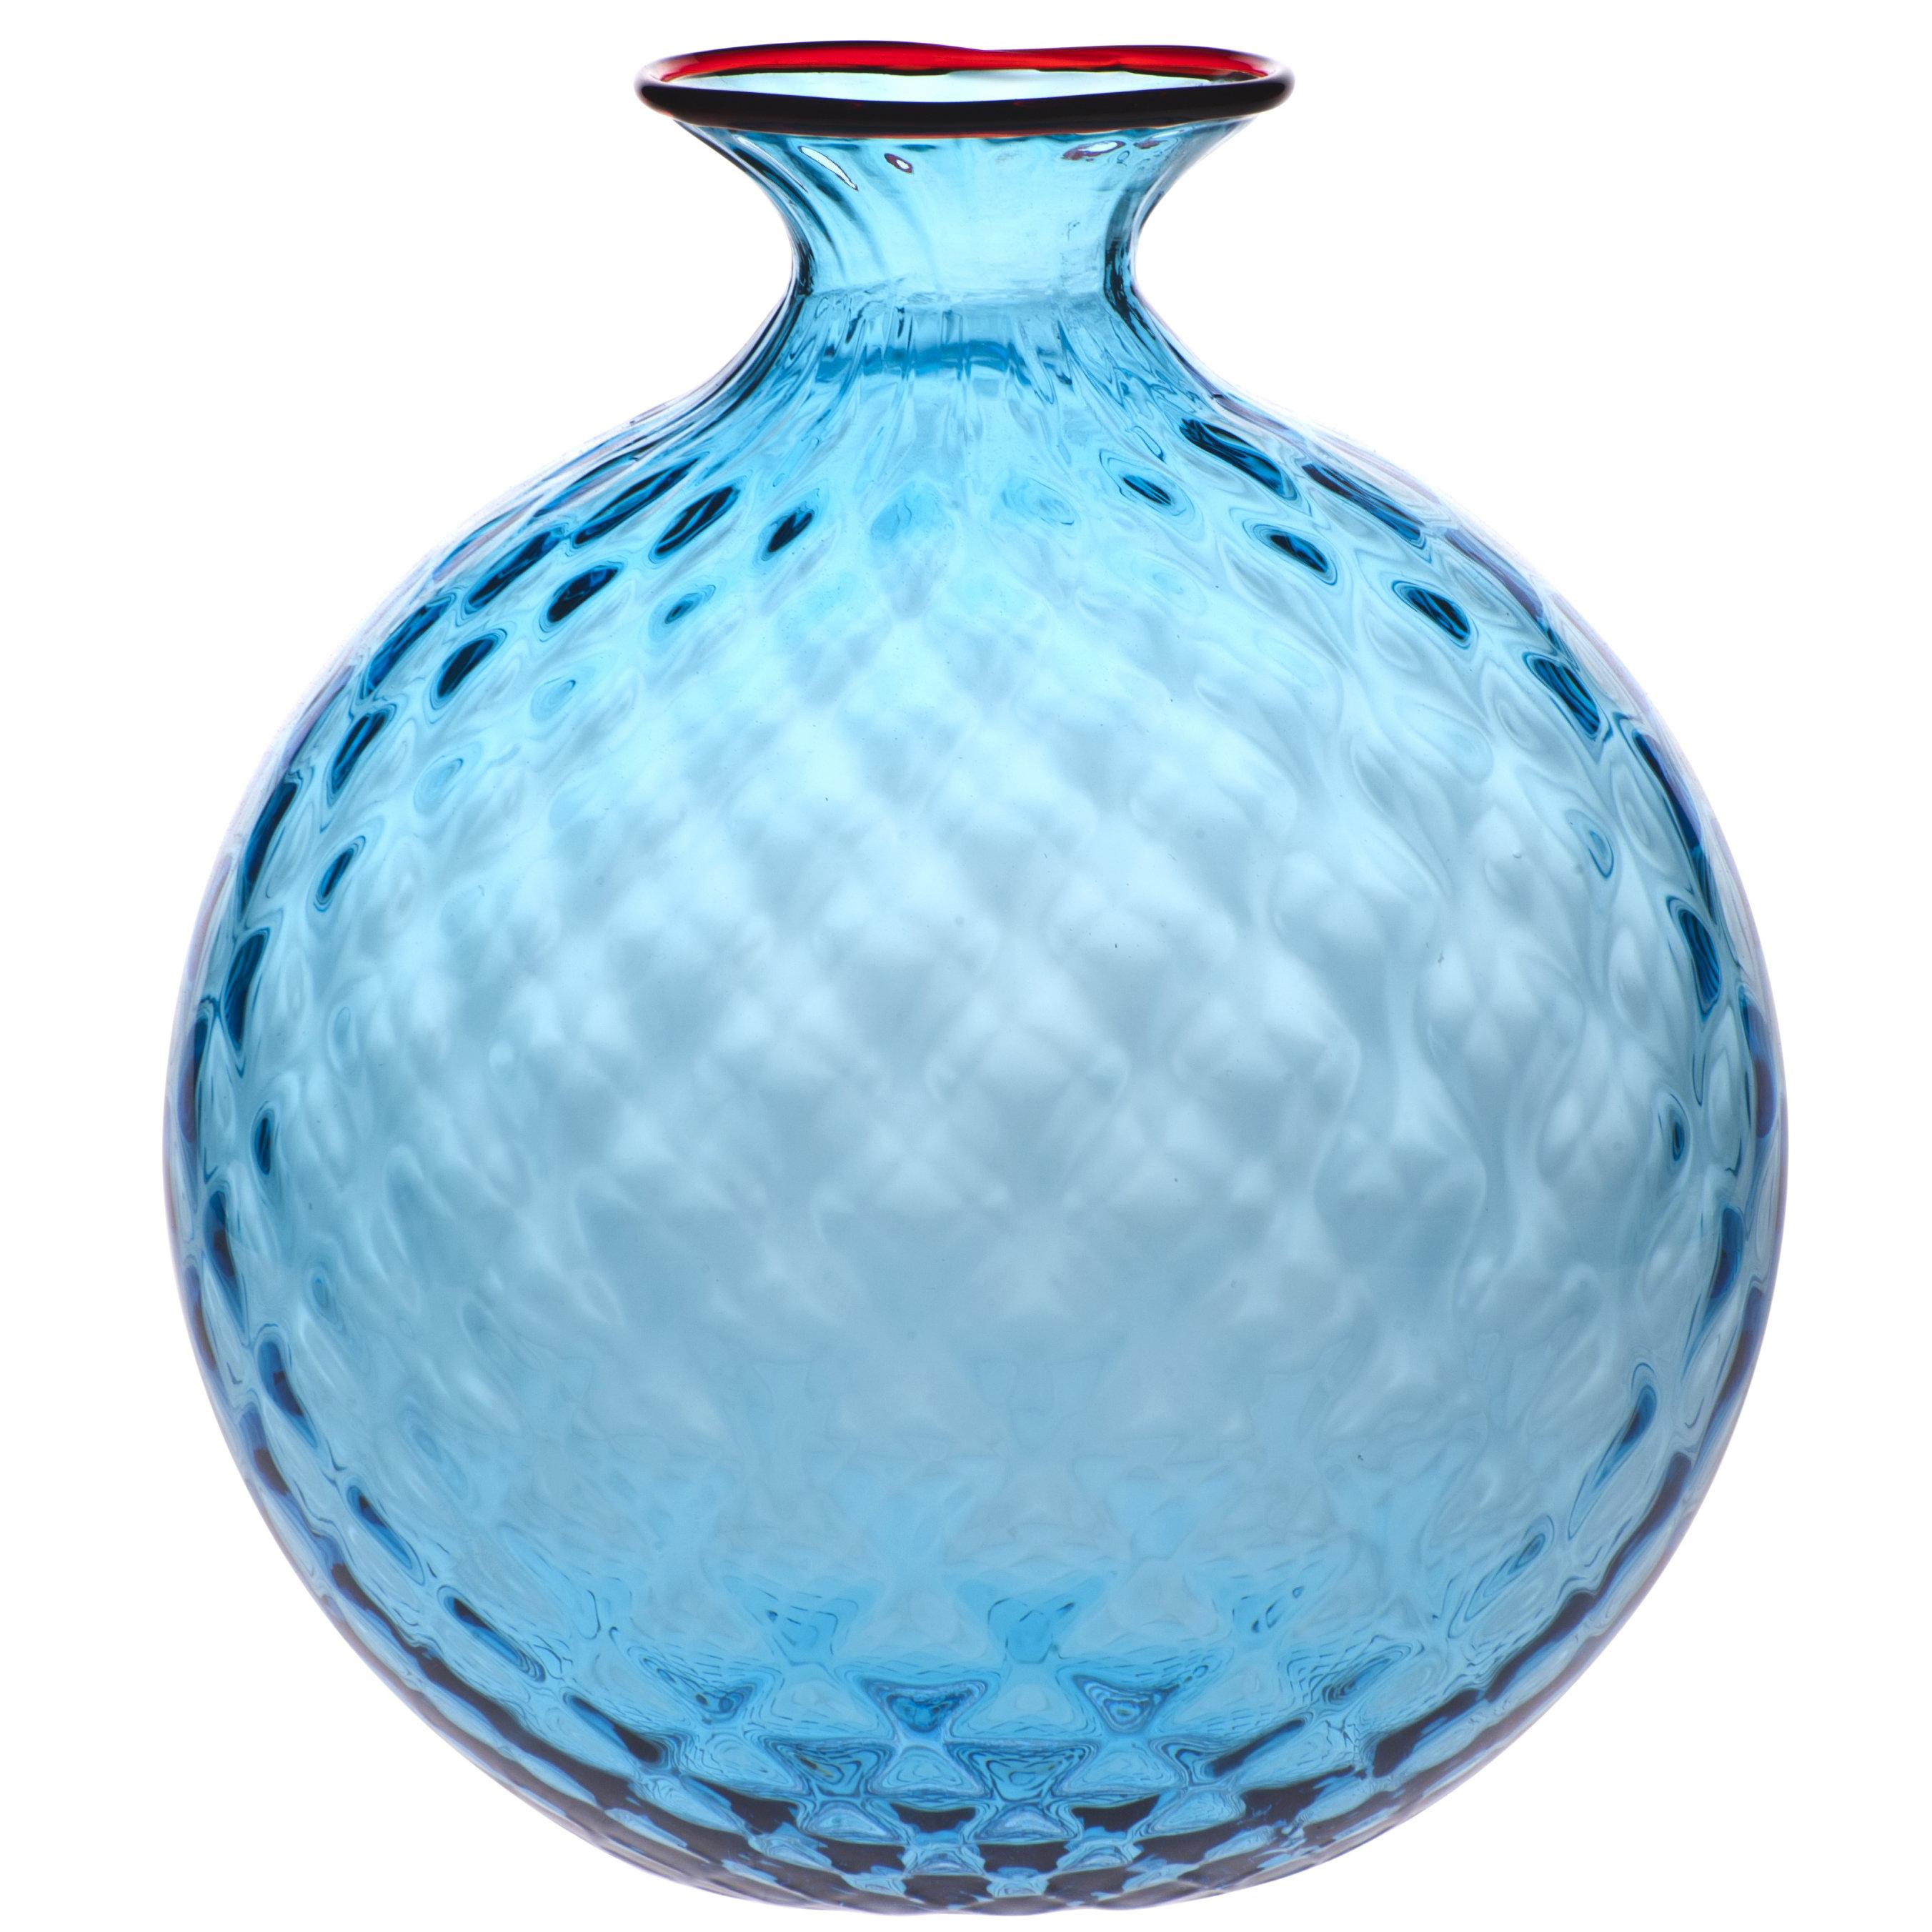 Monofiore Balloton Glass Vase in Aquamarine with Red Thread Rim by Venini For Sale